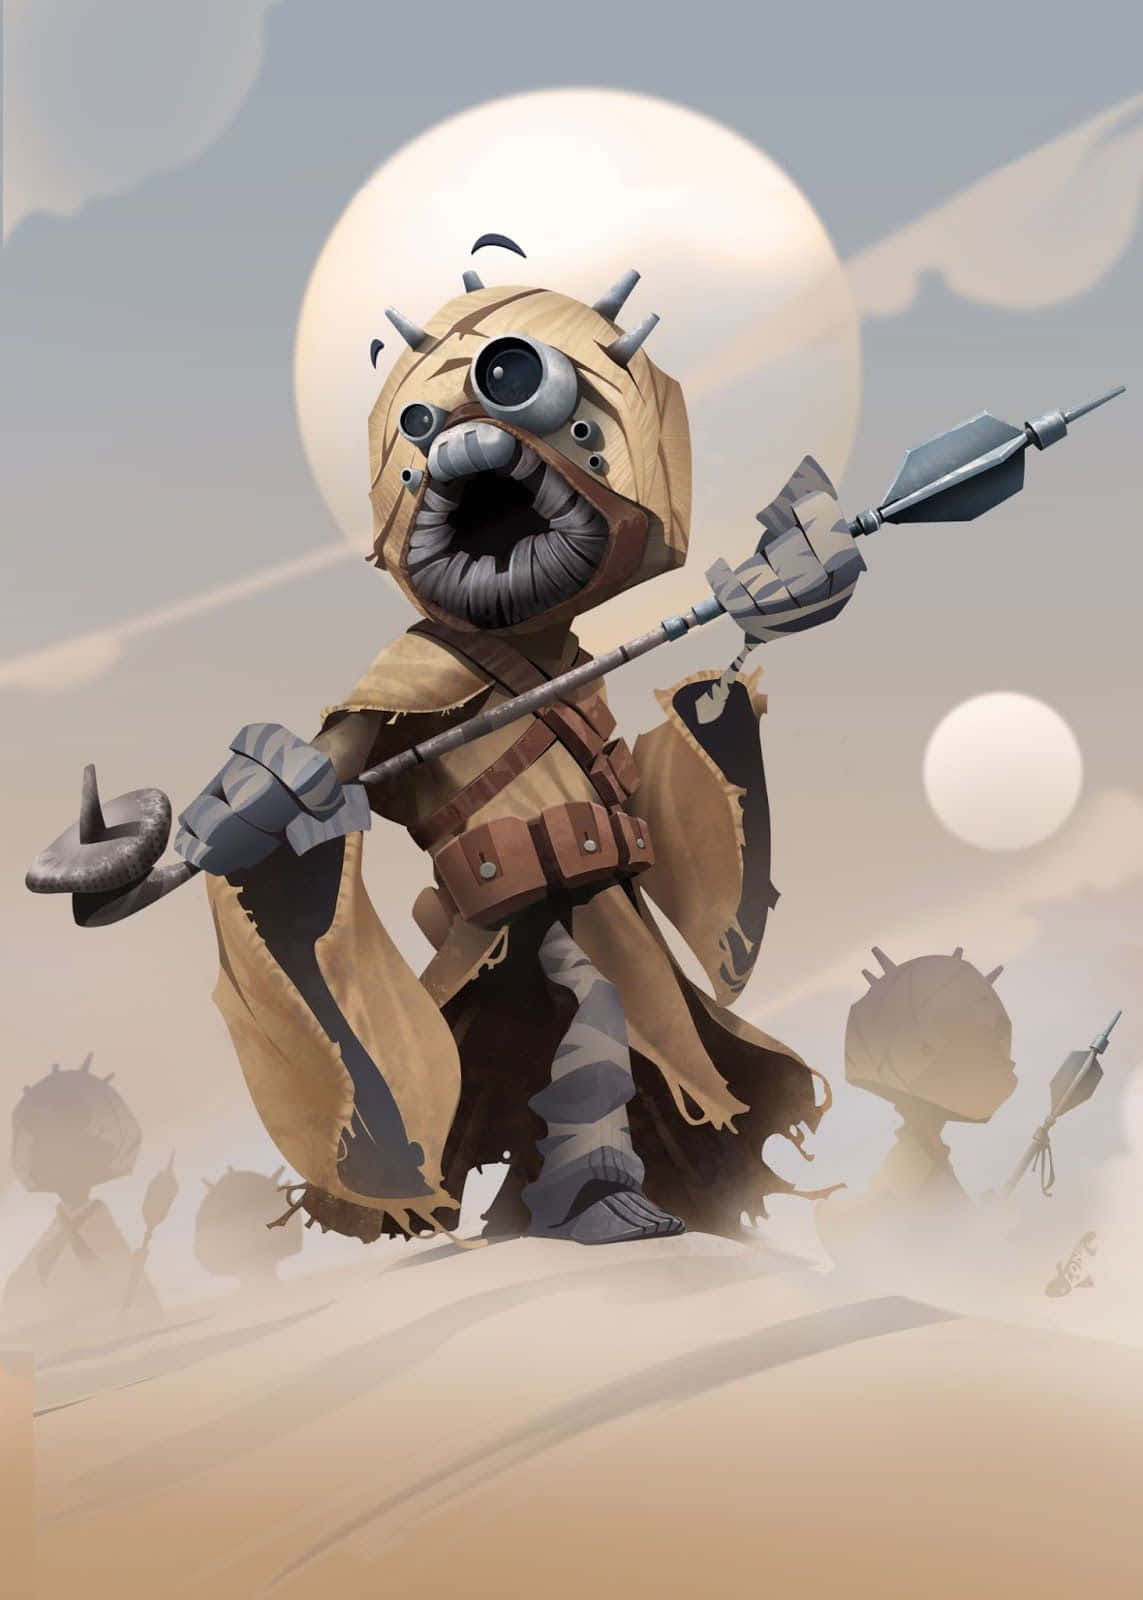 Tusken Raiders looming in the Tatooine desert" Wallpaper